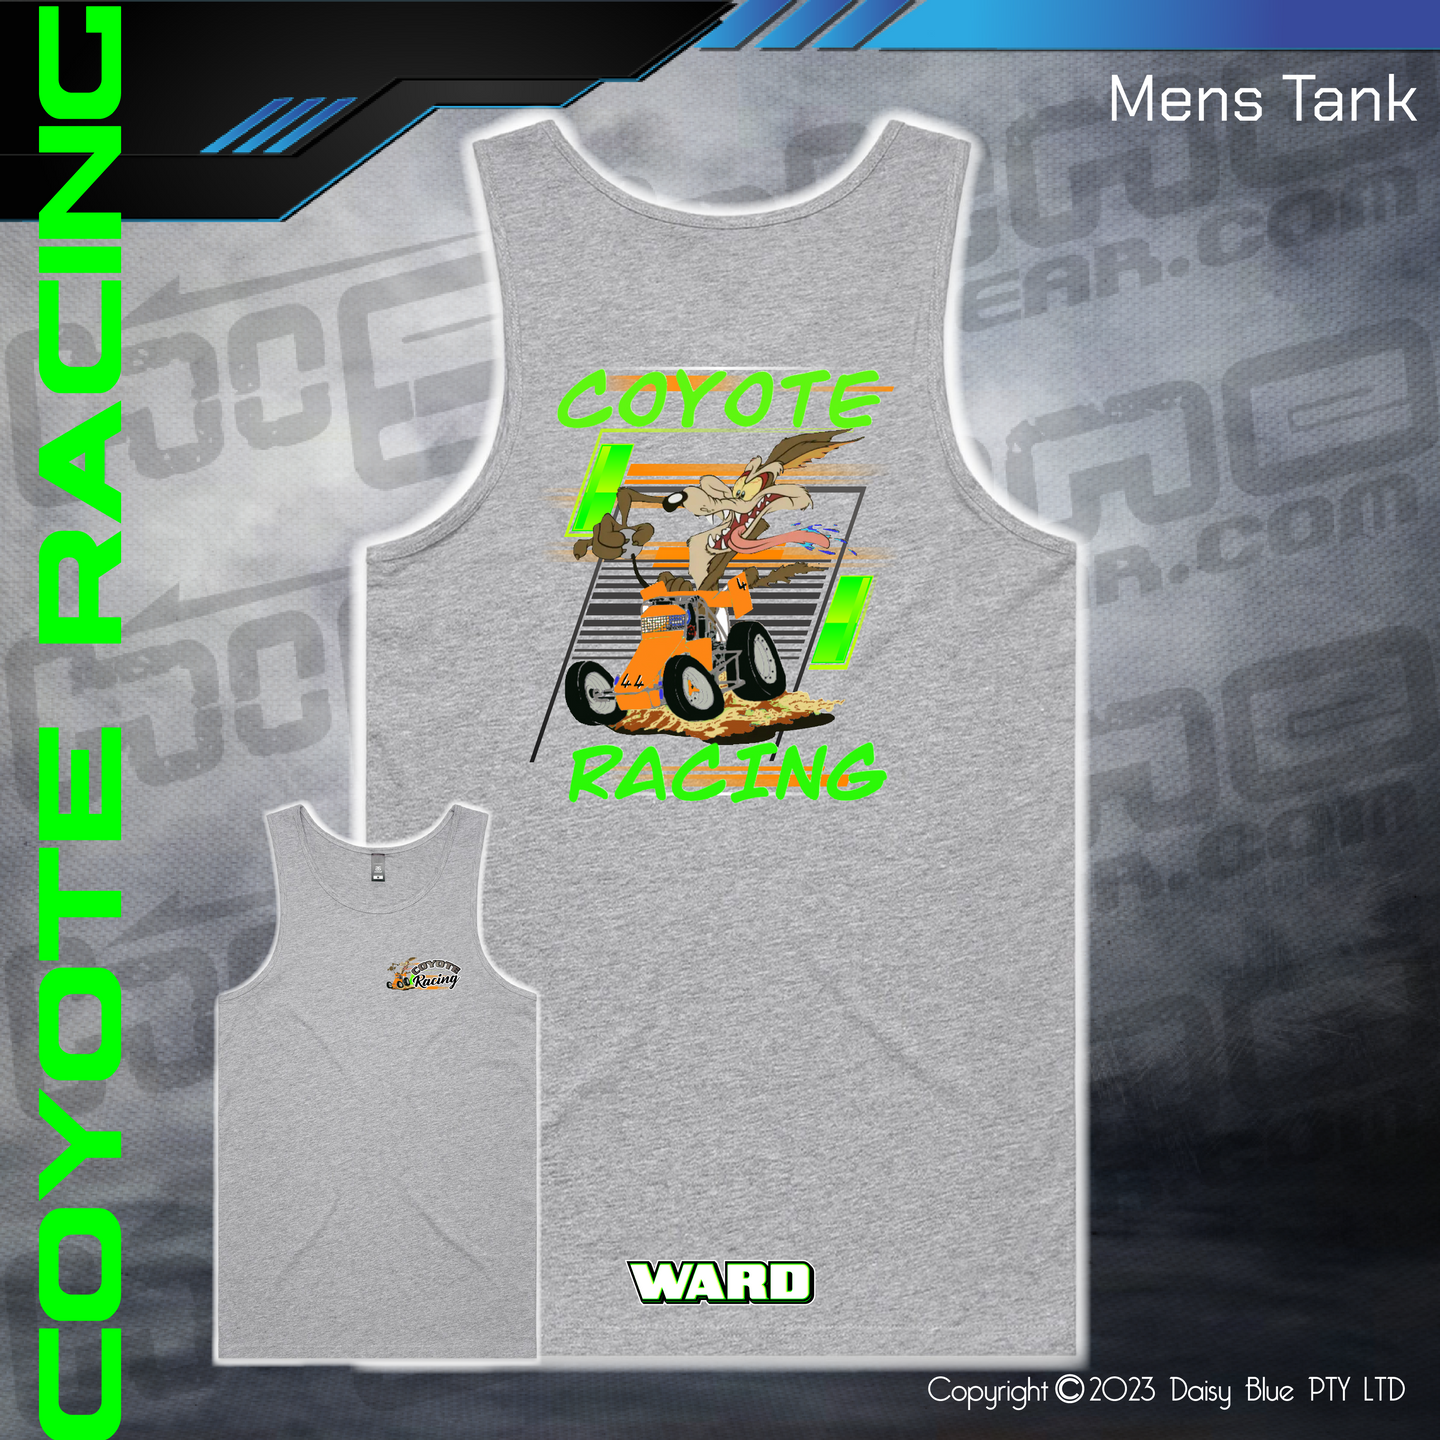 Mens/Kids Tank - Coyote Racing